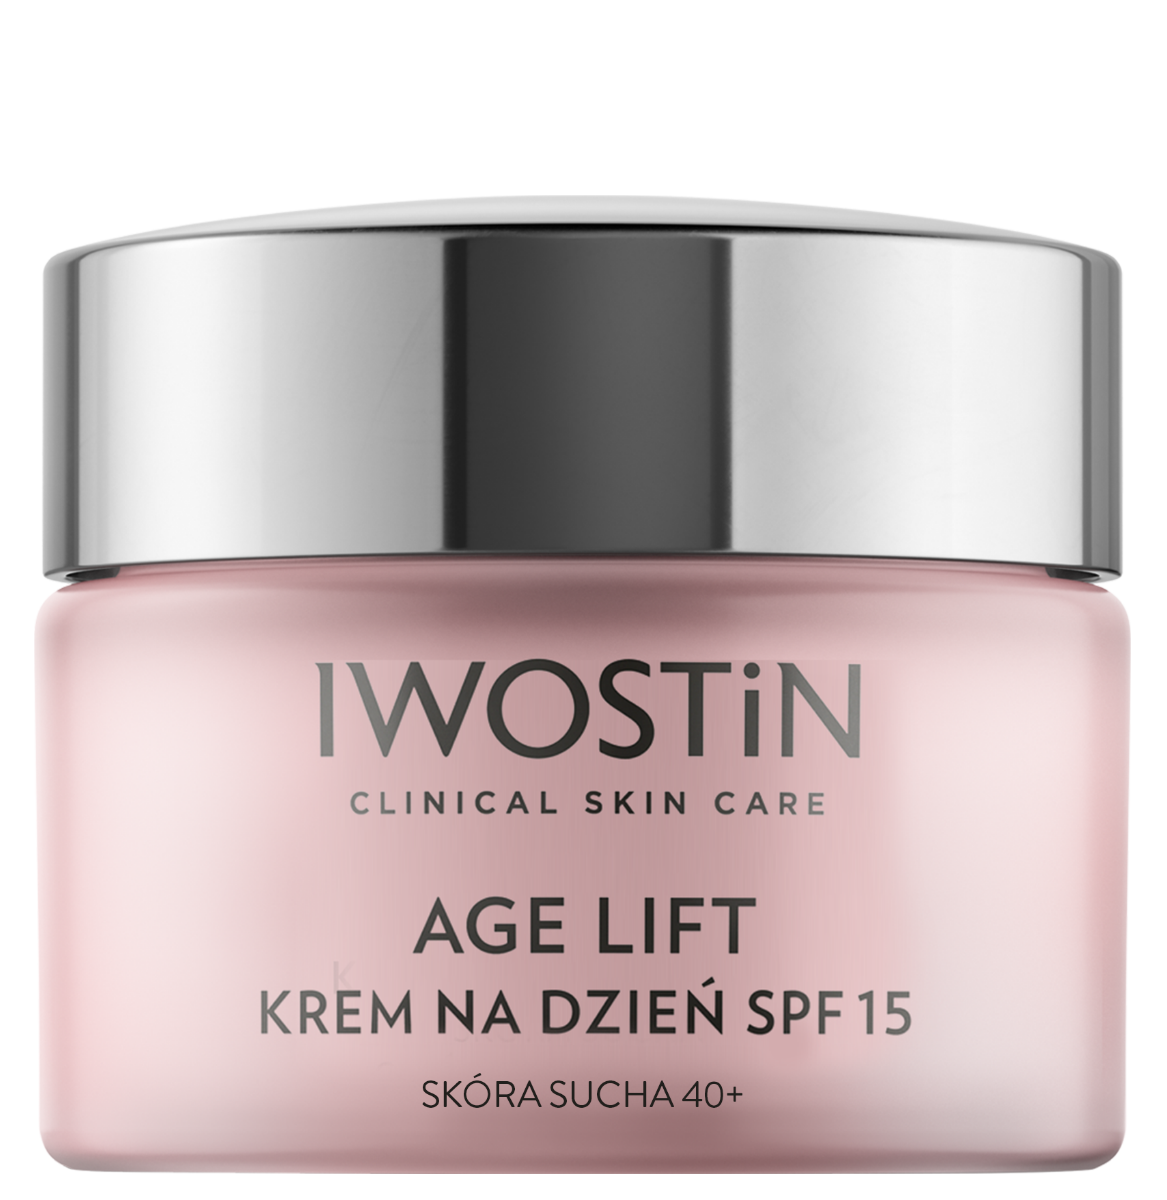 Iwostin Age Lift дневной крем для лица, 50 ml